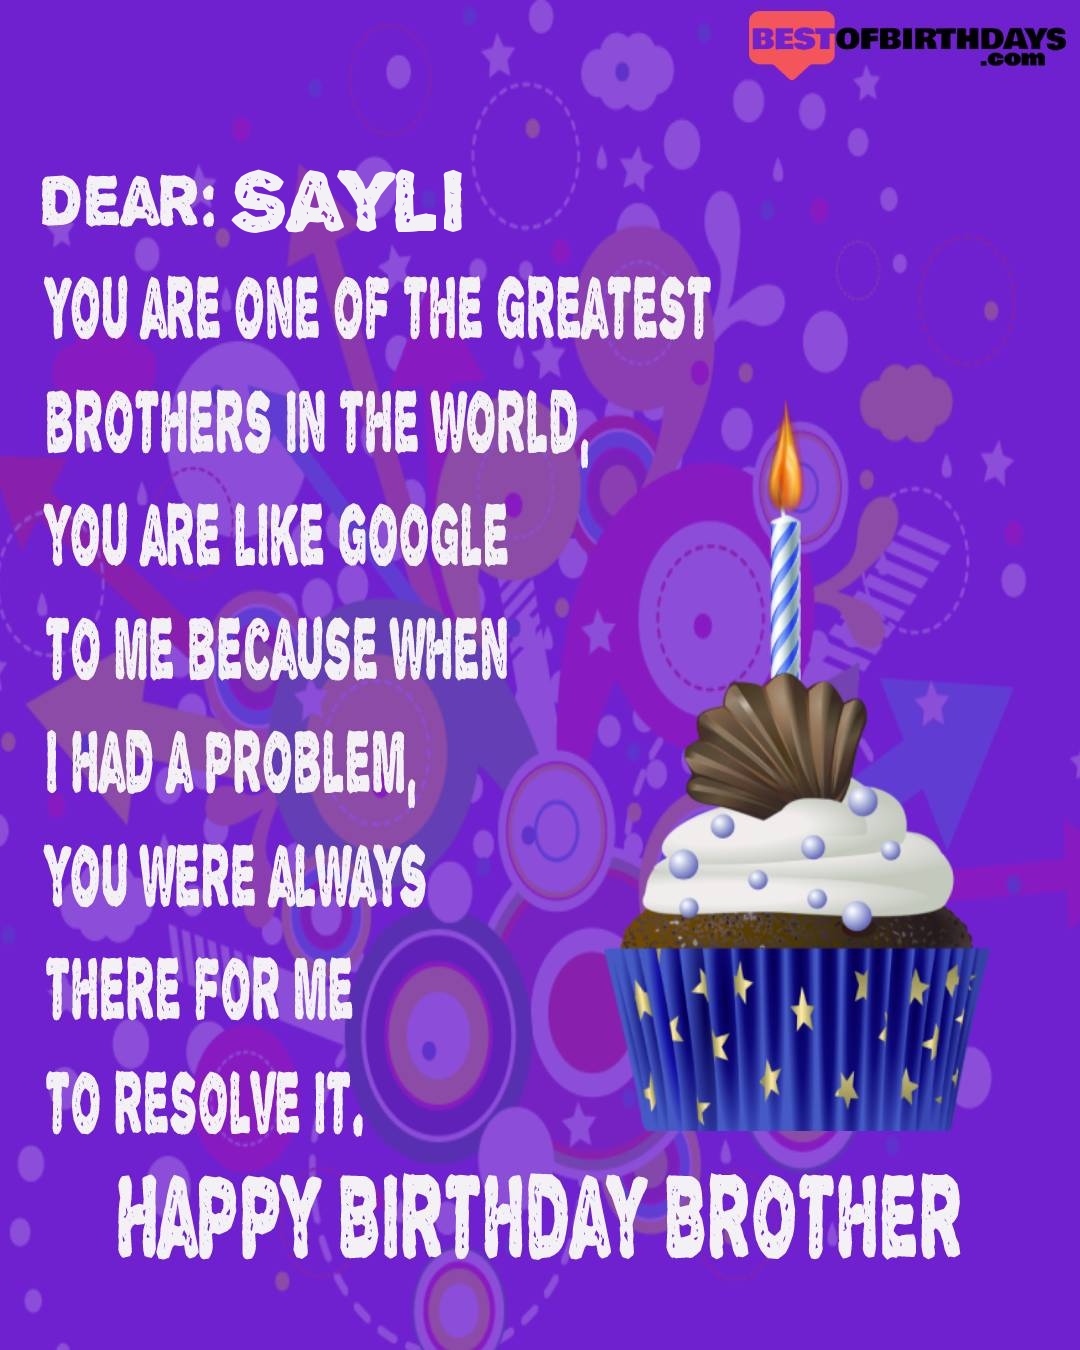 Happy birthday sayli bhai brother bro